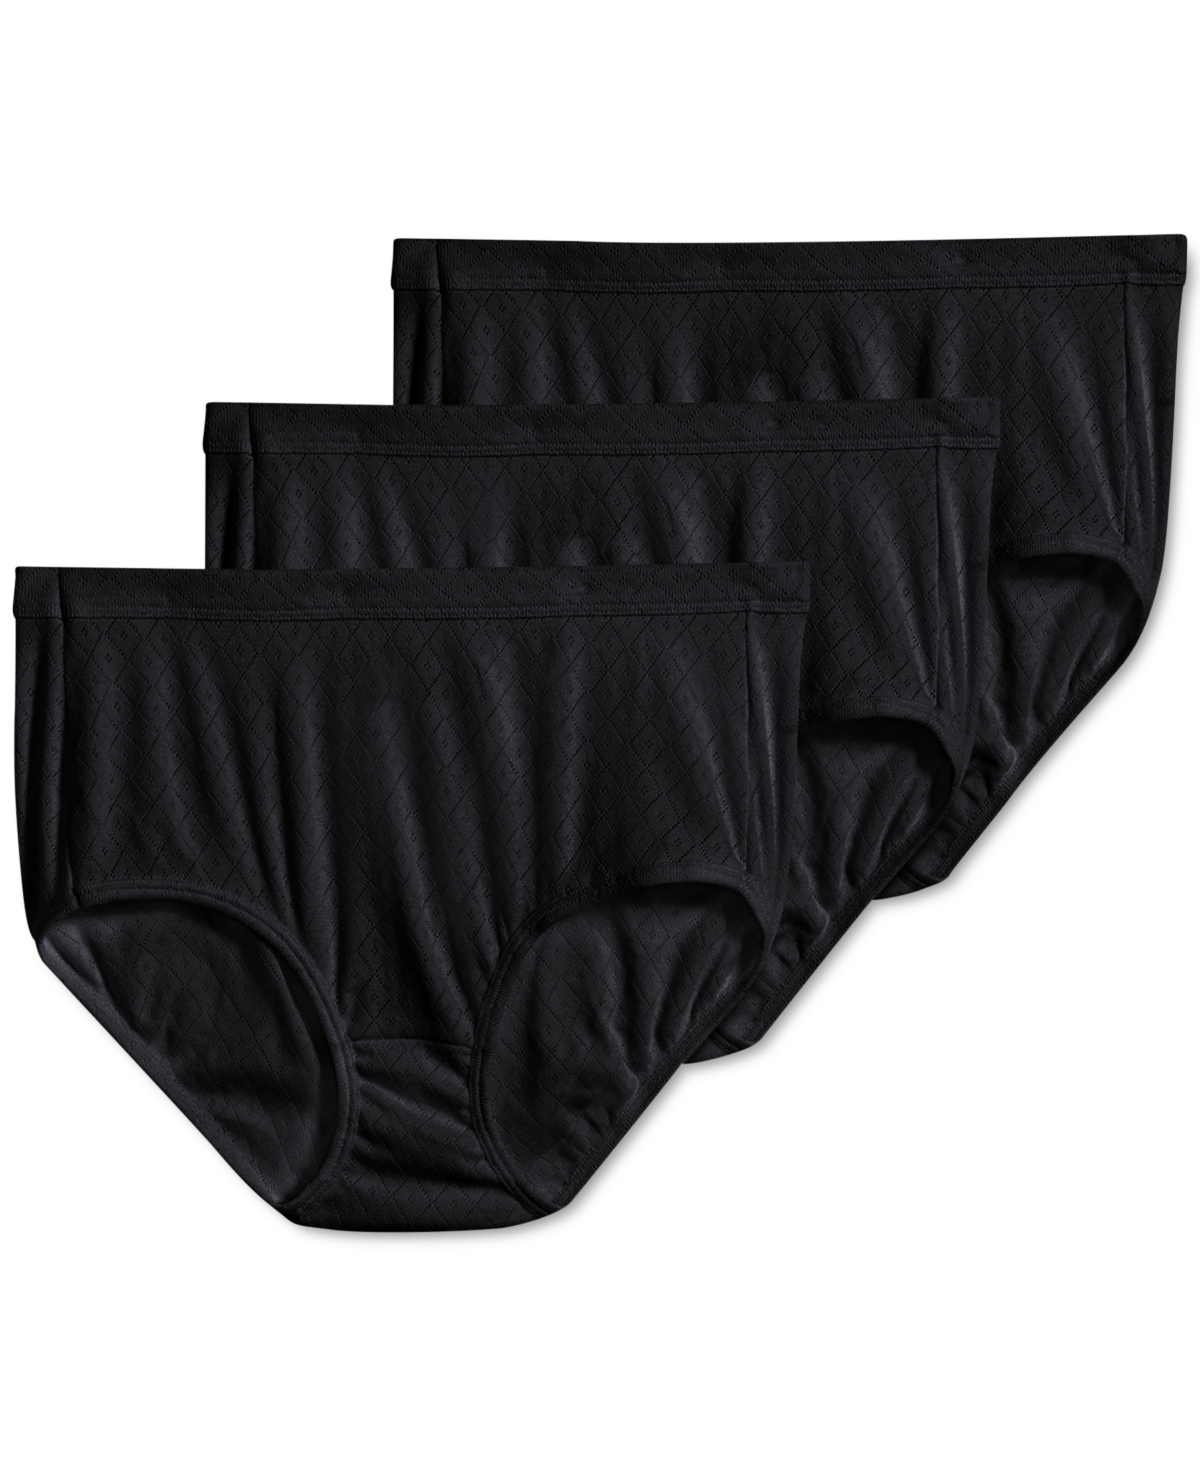 Elance Breathe Brief 3 Pack Underwear 1542, Extended Sizes - Black